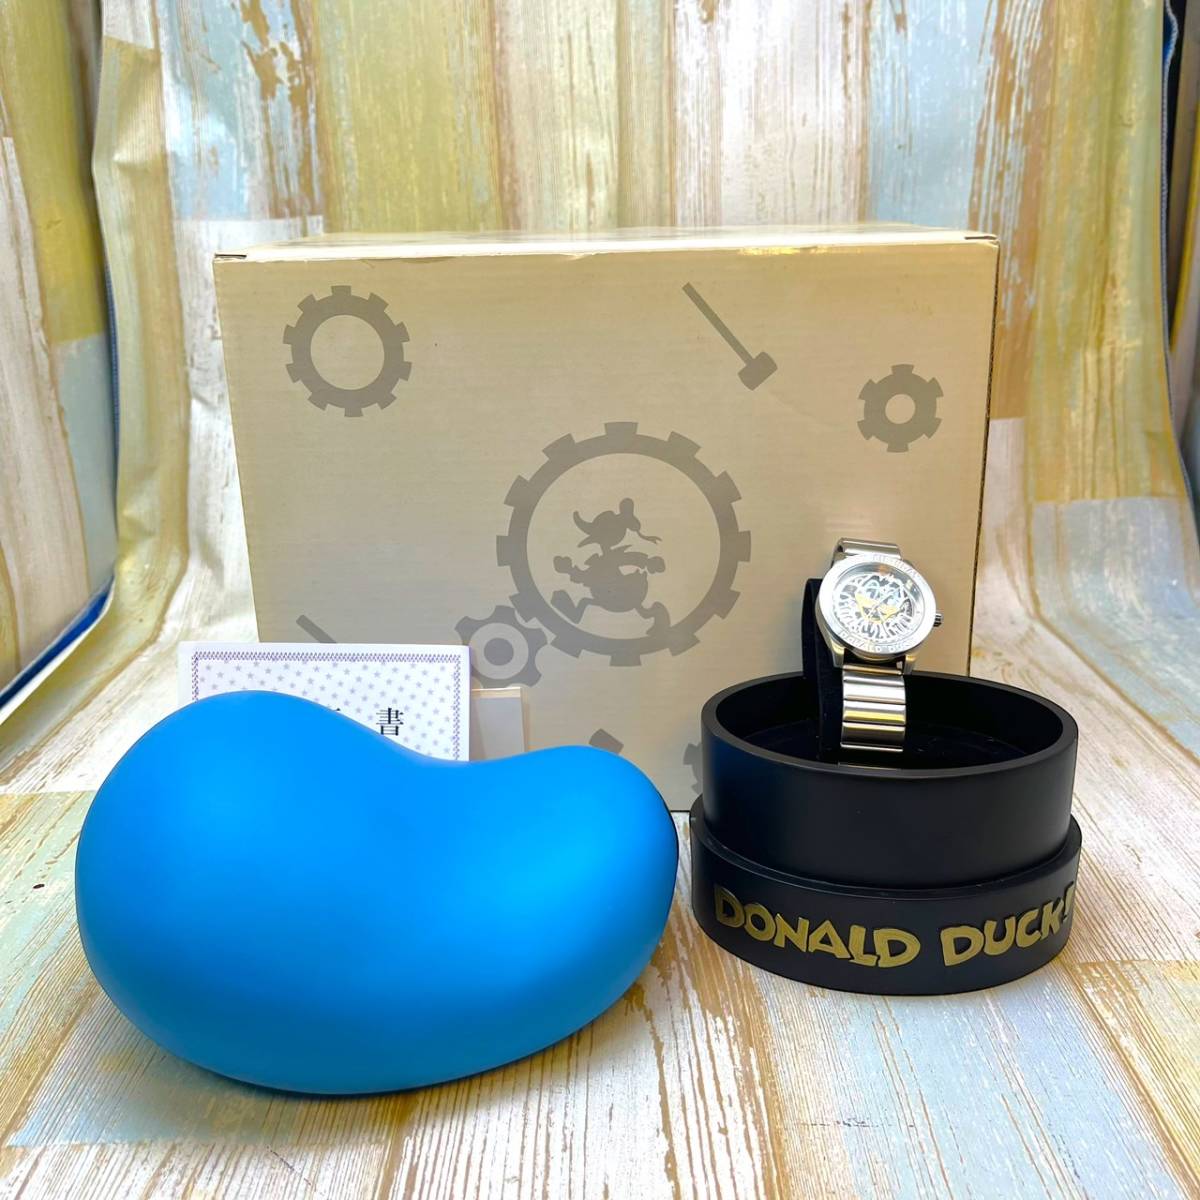 限定500個 限定品★ドナルド ダック Donald Duck 誕生 67周年 腕時計 帽子型 陶器製 ケース付き フィギュア★ディズニー Disney 巻き時計の画像1